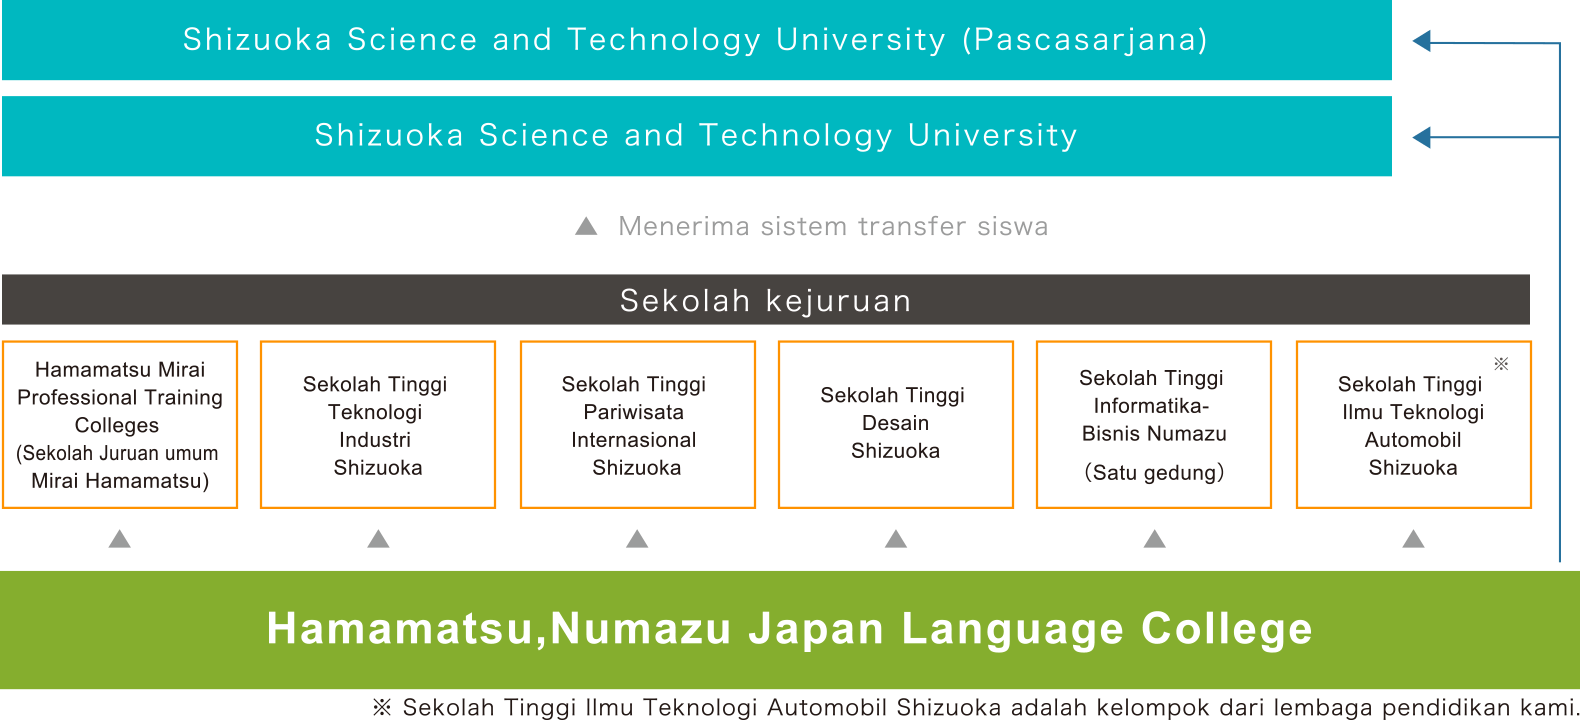 Đặc sắc của Học viện nhật ngữ Hamamatsu, Numazu